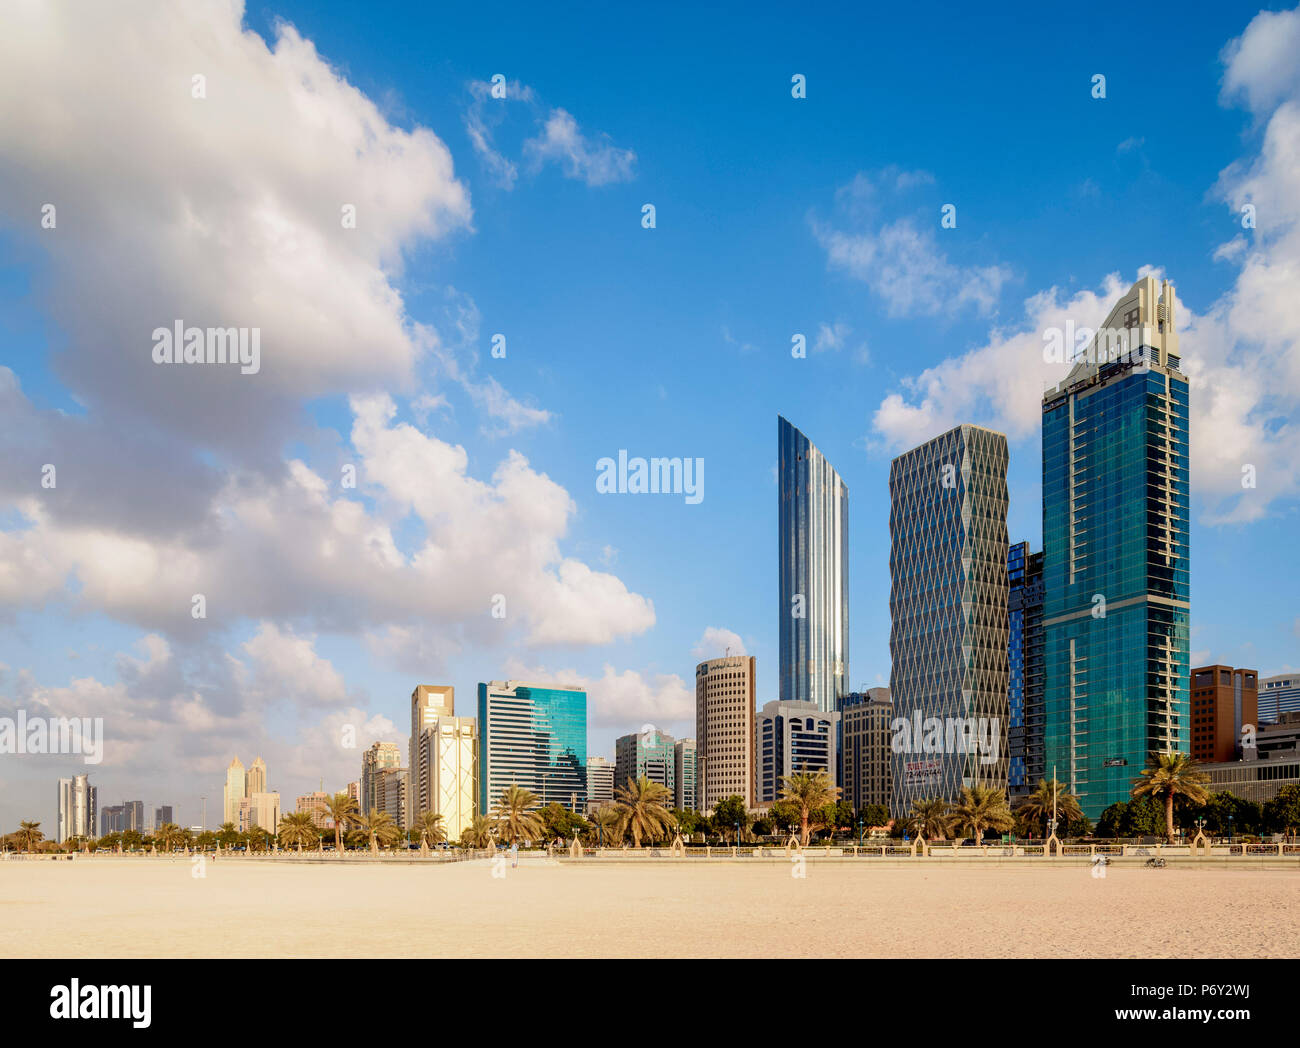 Abu Dhabi Beach con el centro de la ciudad incluyendo Skyline World Trade Center, Abu Dhabi, Emiratos Arabes Unidos Foto de stock